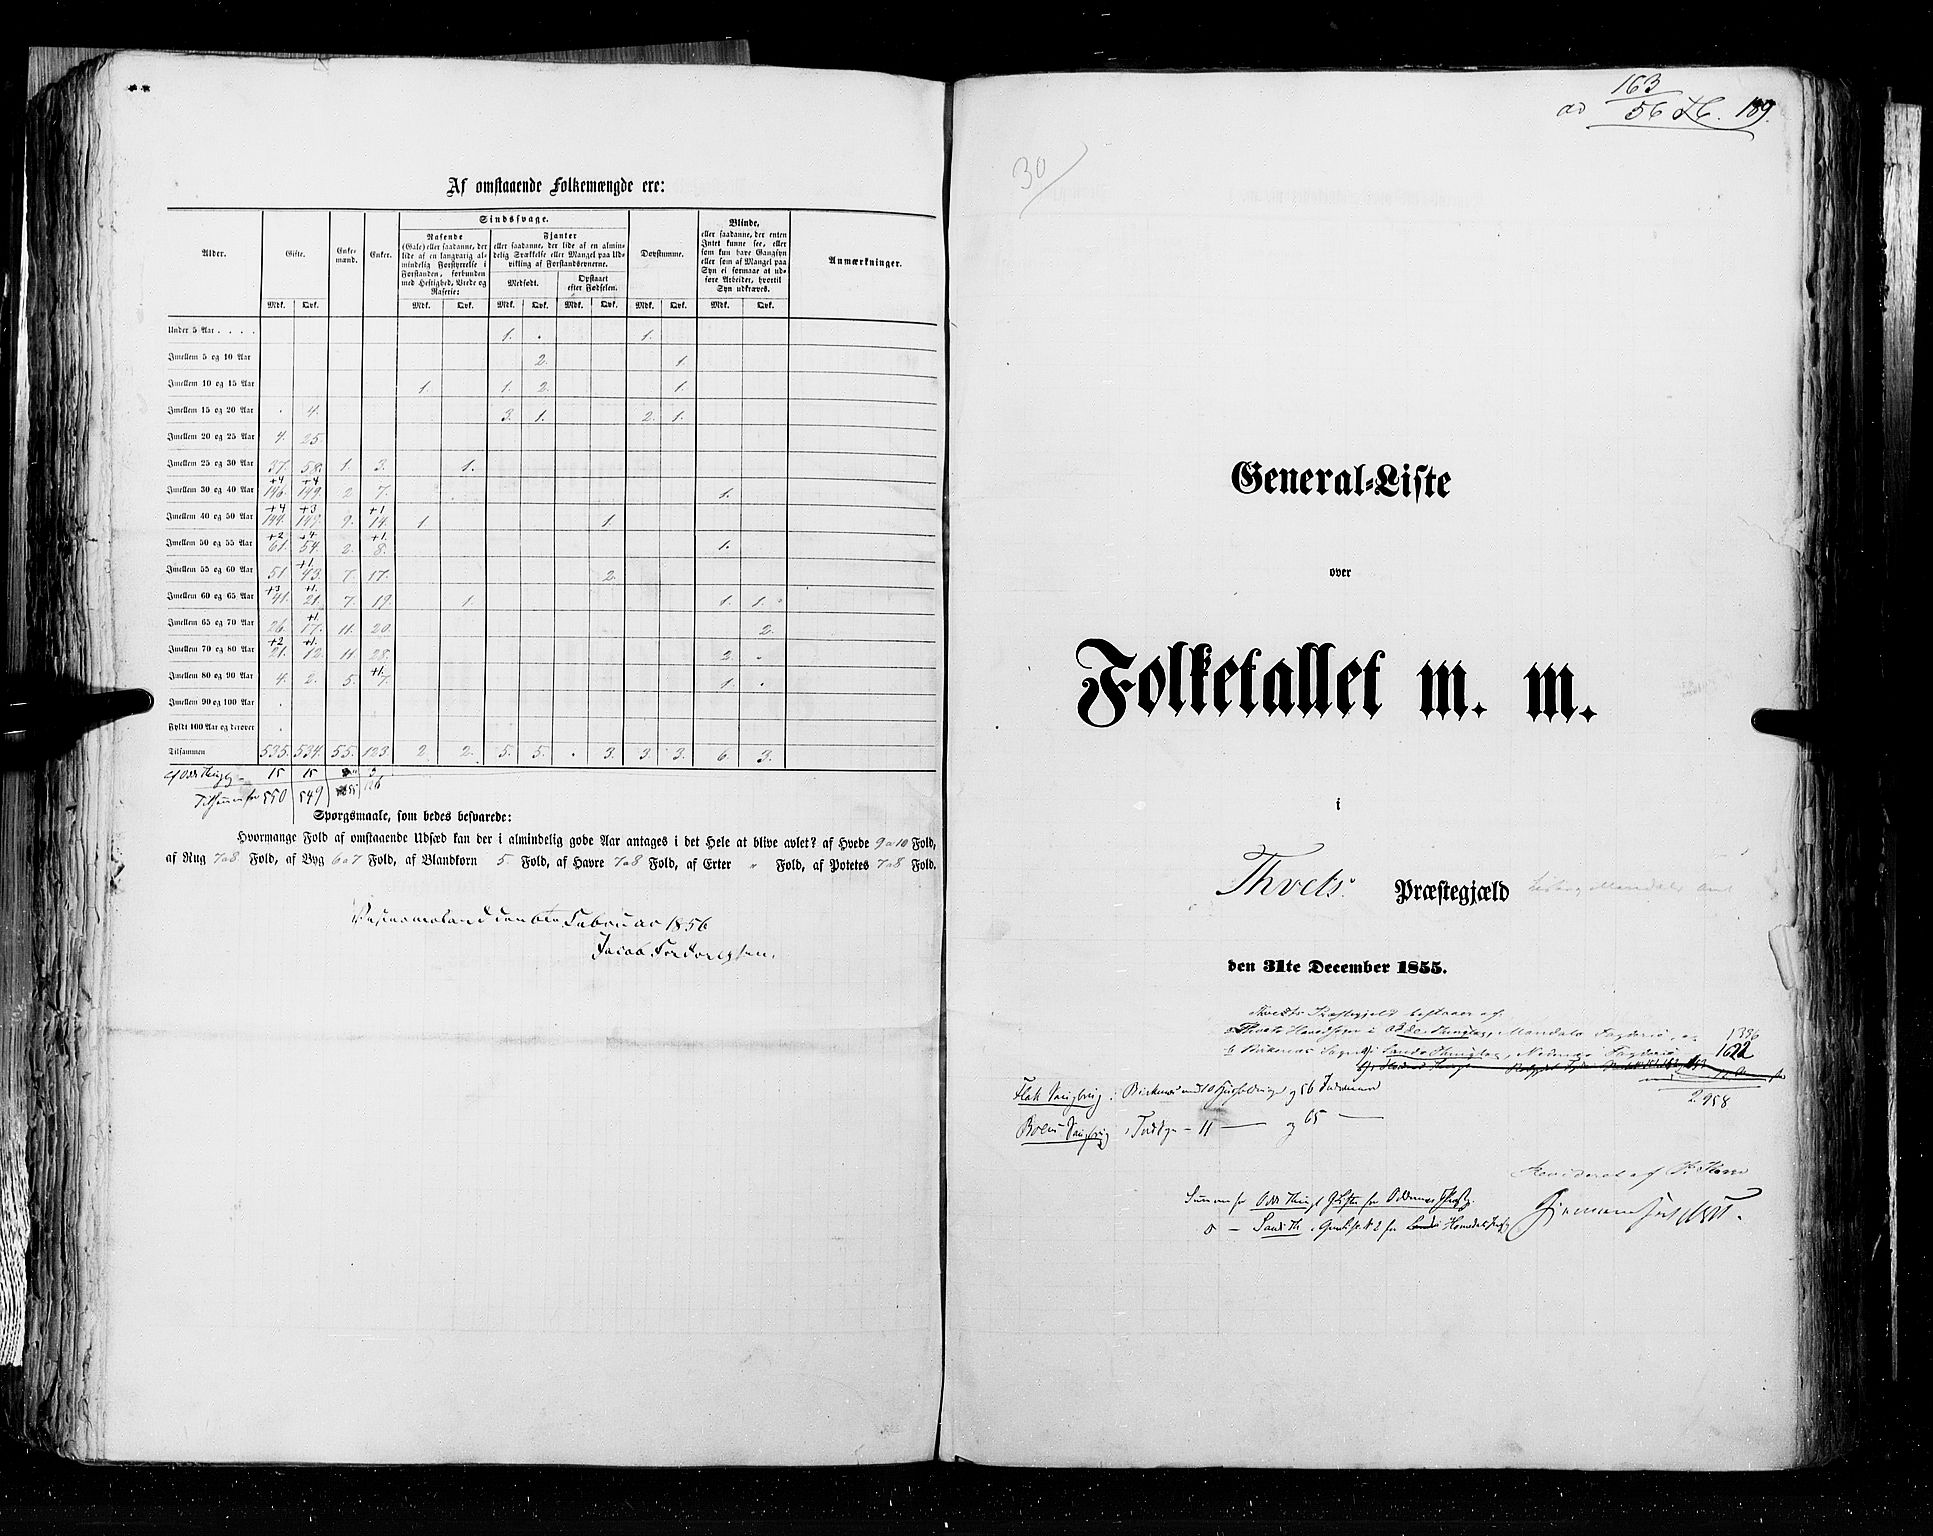 RA, Census 1855, vol. 3: Bratsberg amt, Nedenes amt og Lister og Mandal amt, 1855, p. 189